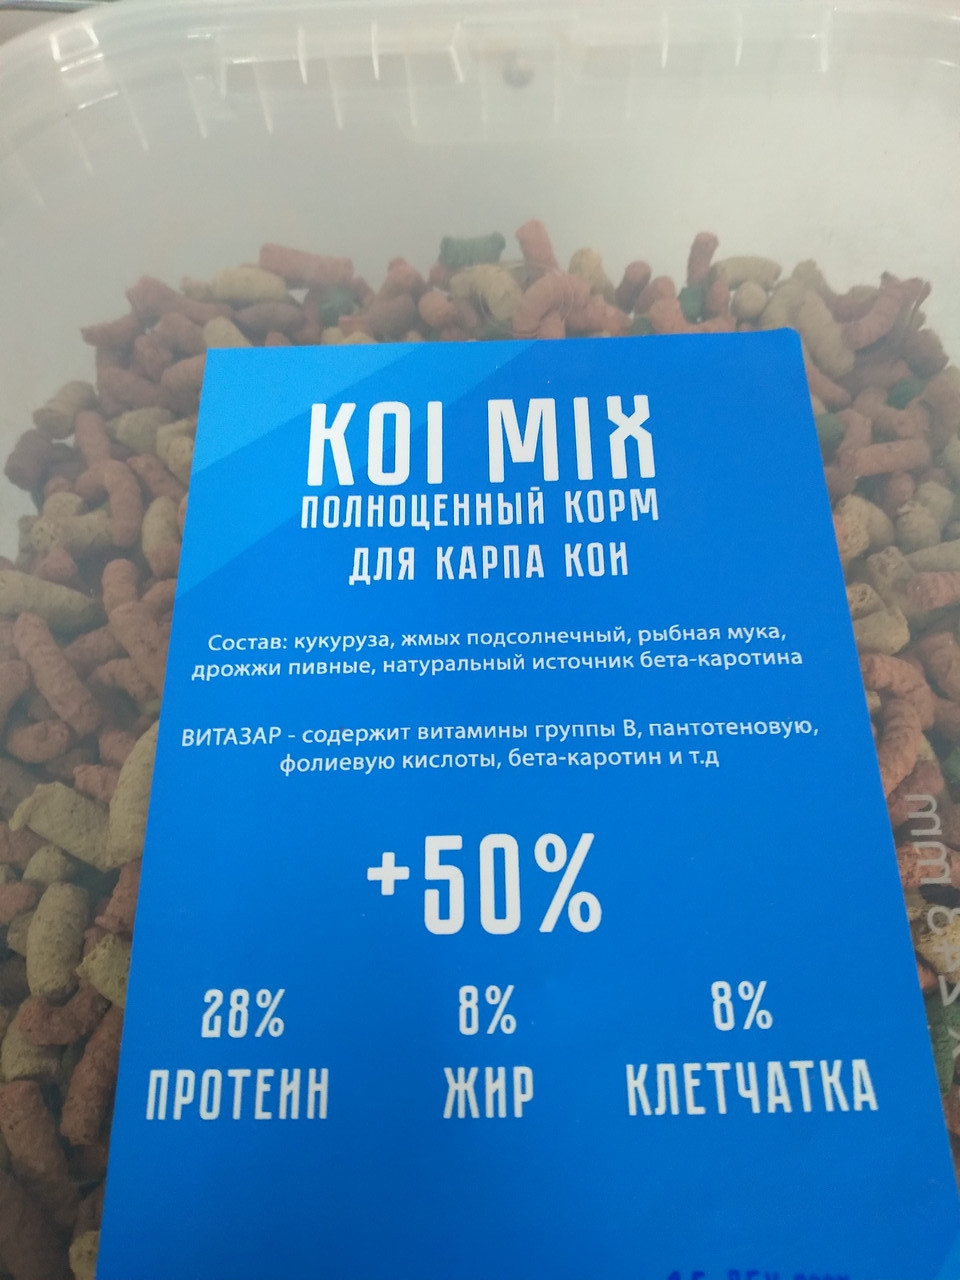 Корм для карпа кои Koi MIX+50% 3IN1 c витазаром  5.8 литров